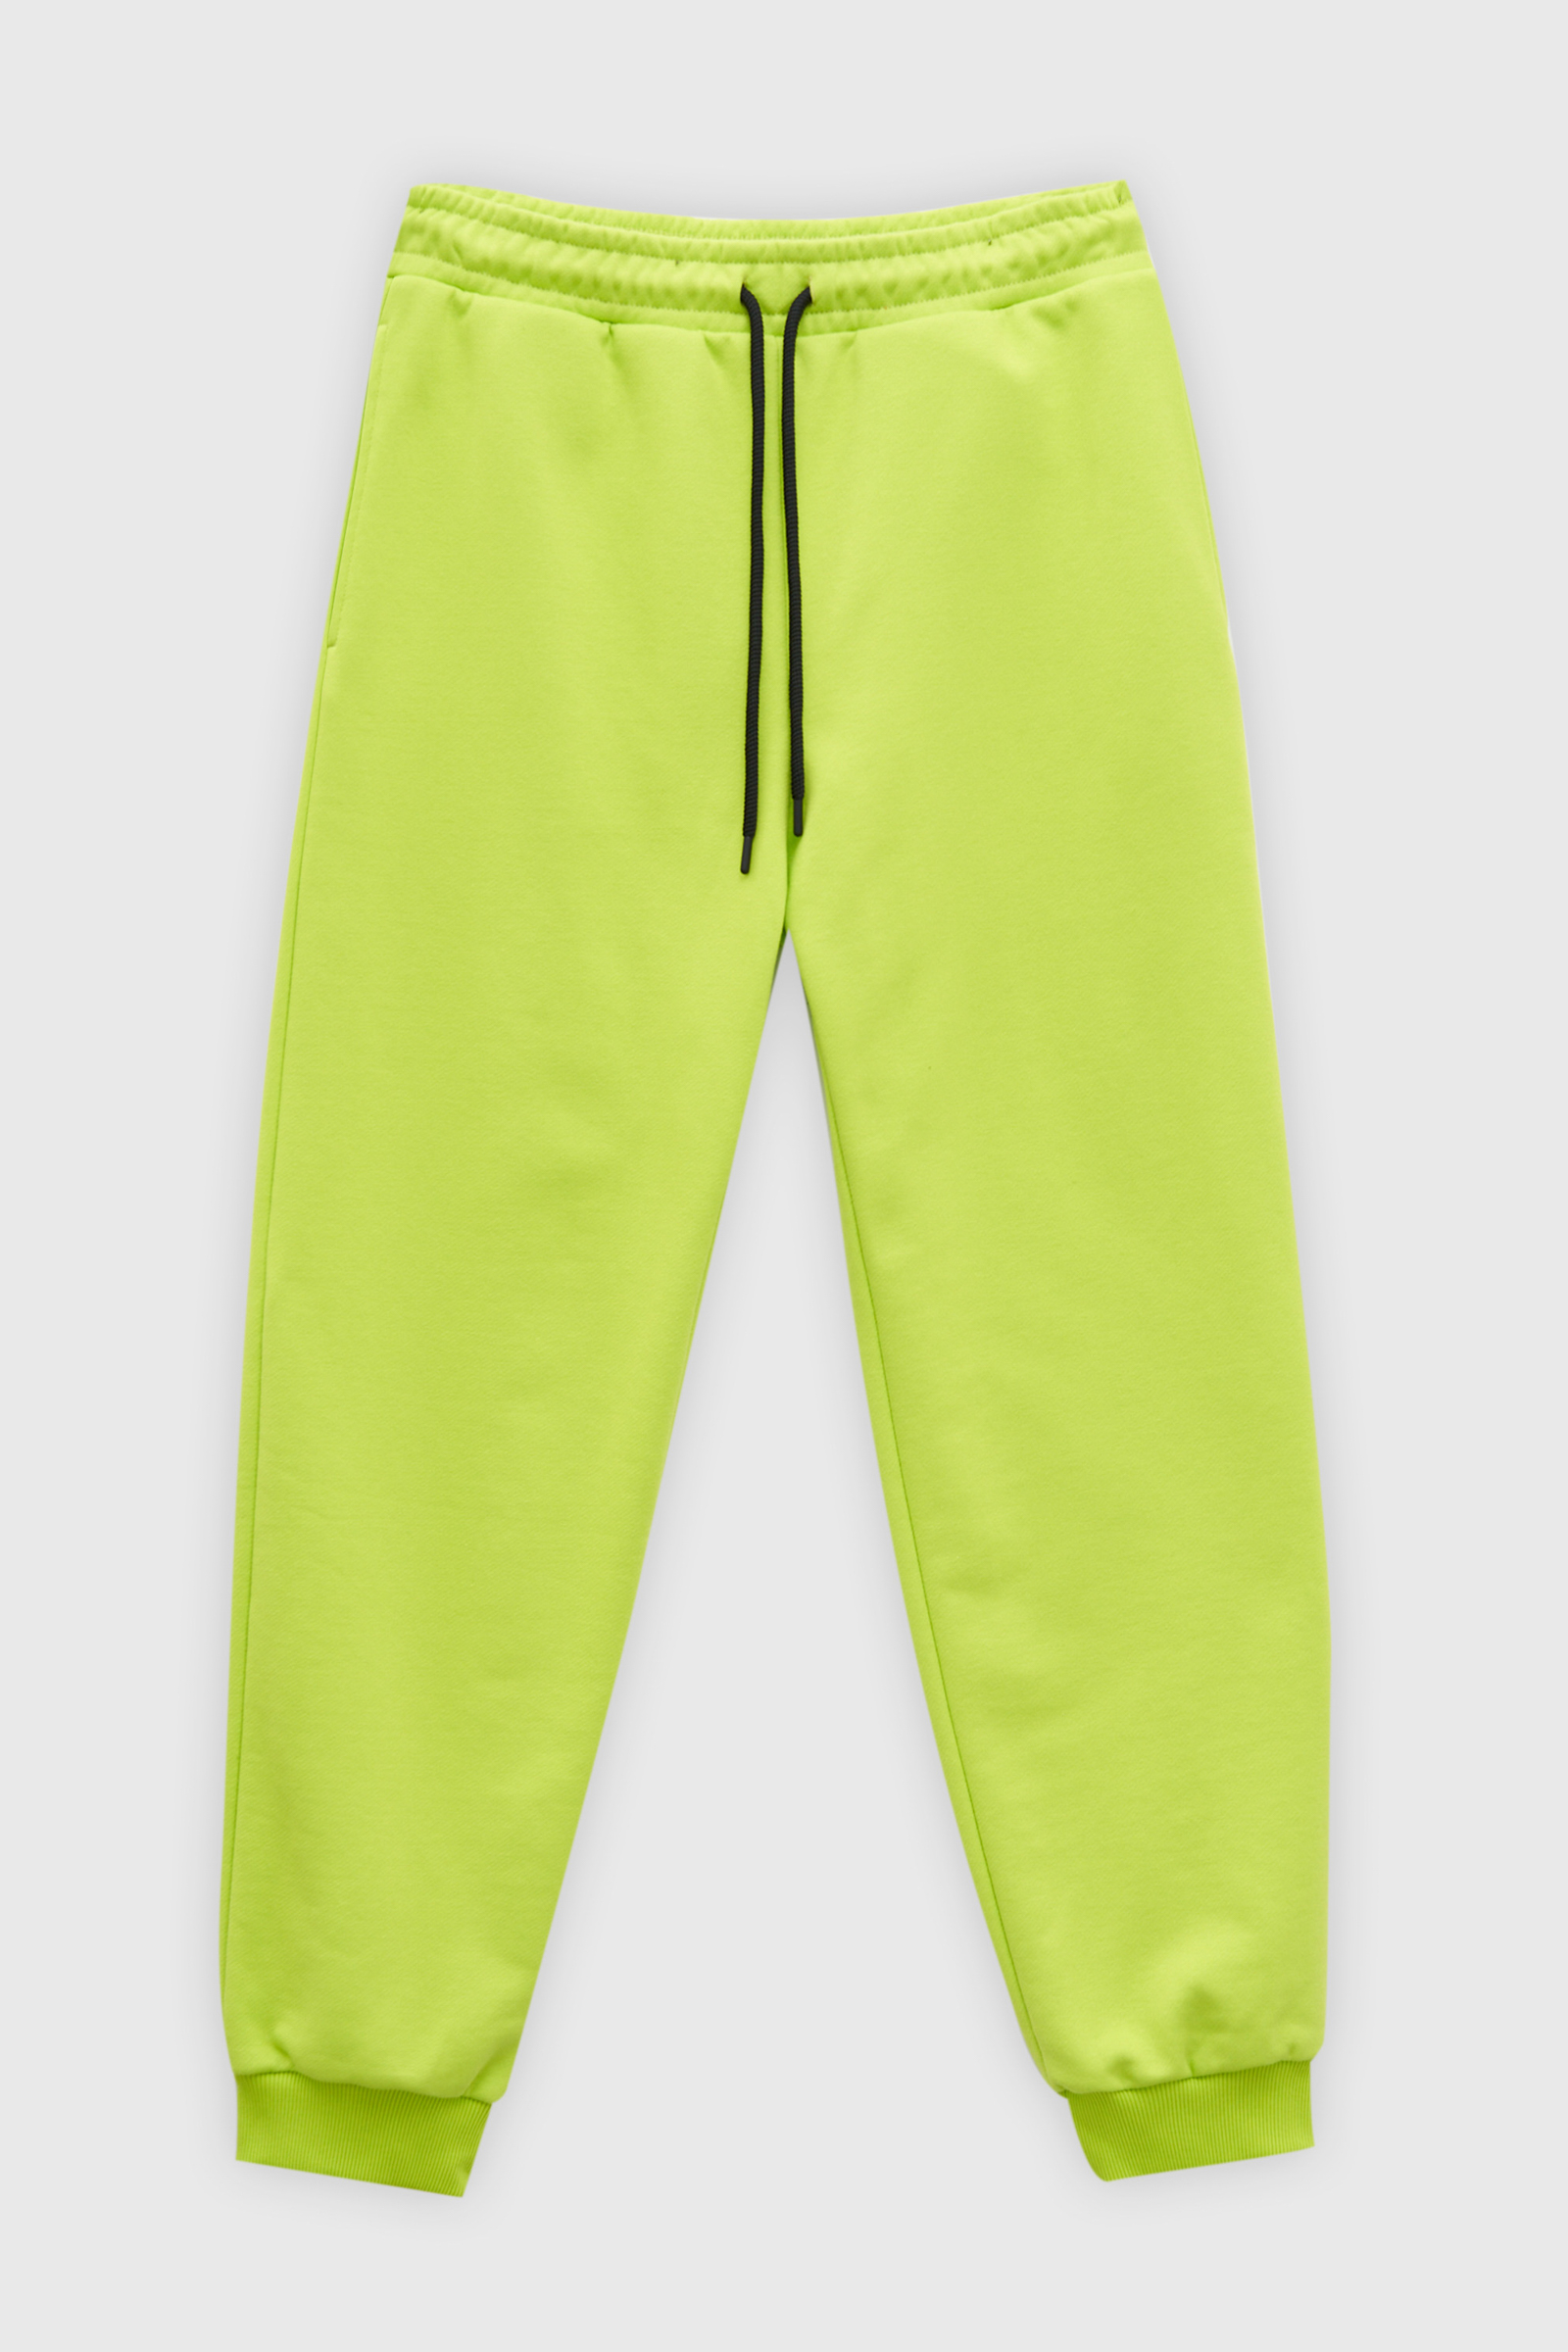 Спортивные брюки мужские Finn Flare FAD210116 зеленые S